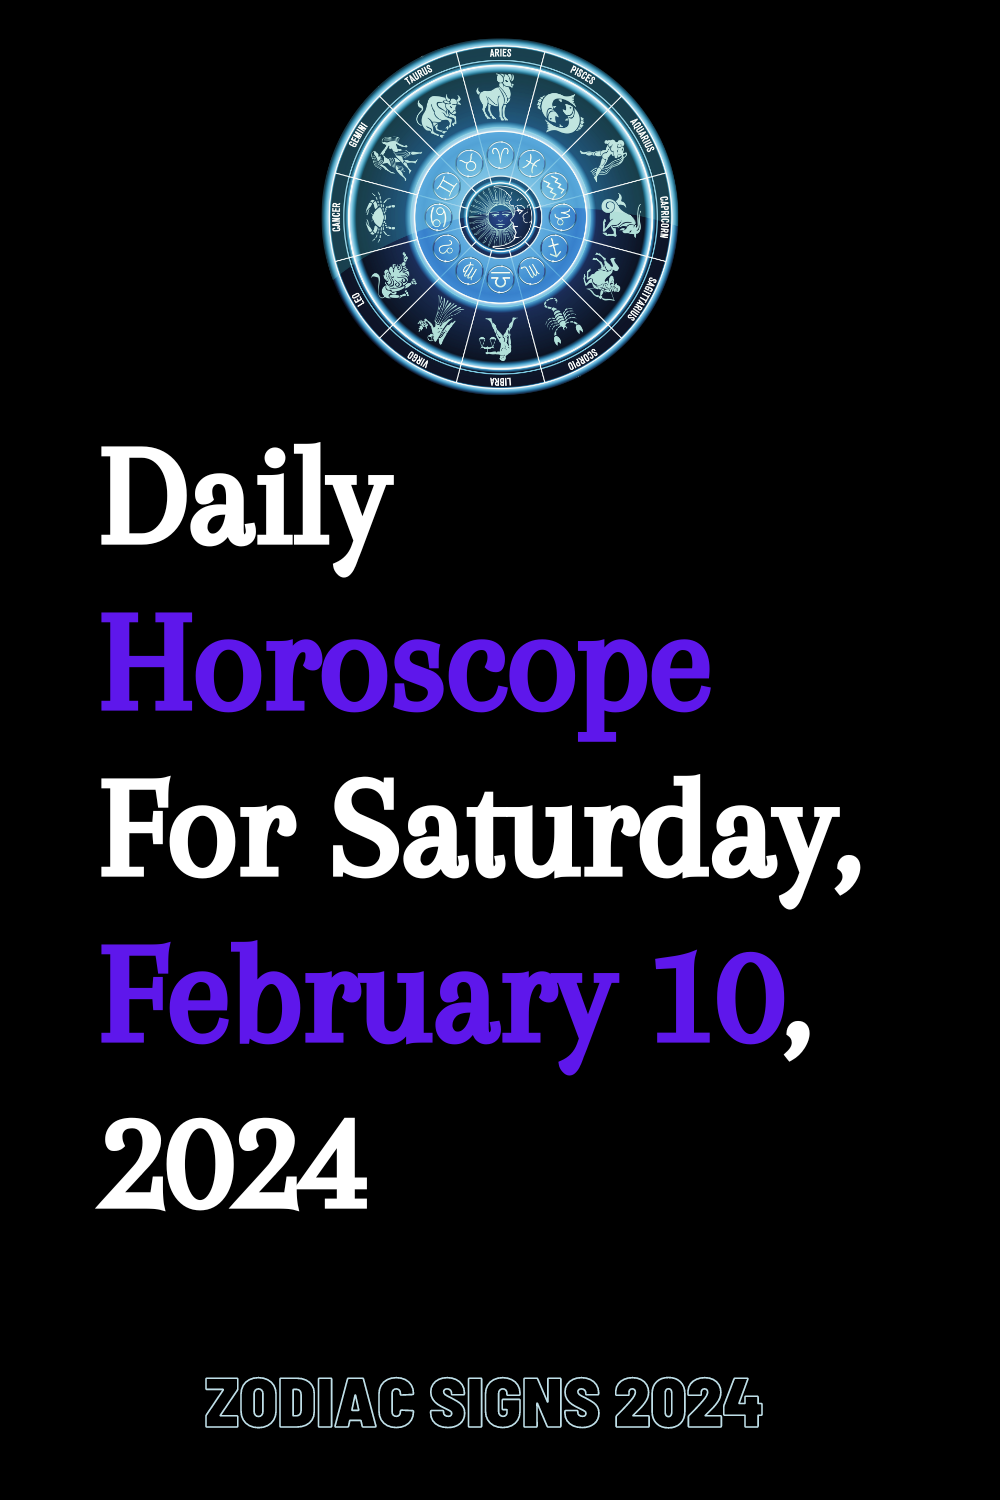 Daily Horoscope For Saturday, February 10, 2024